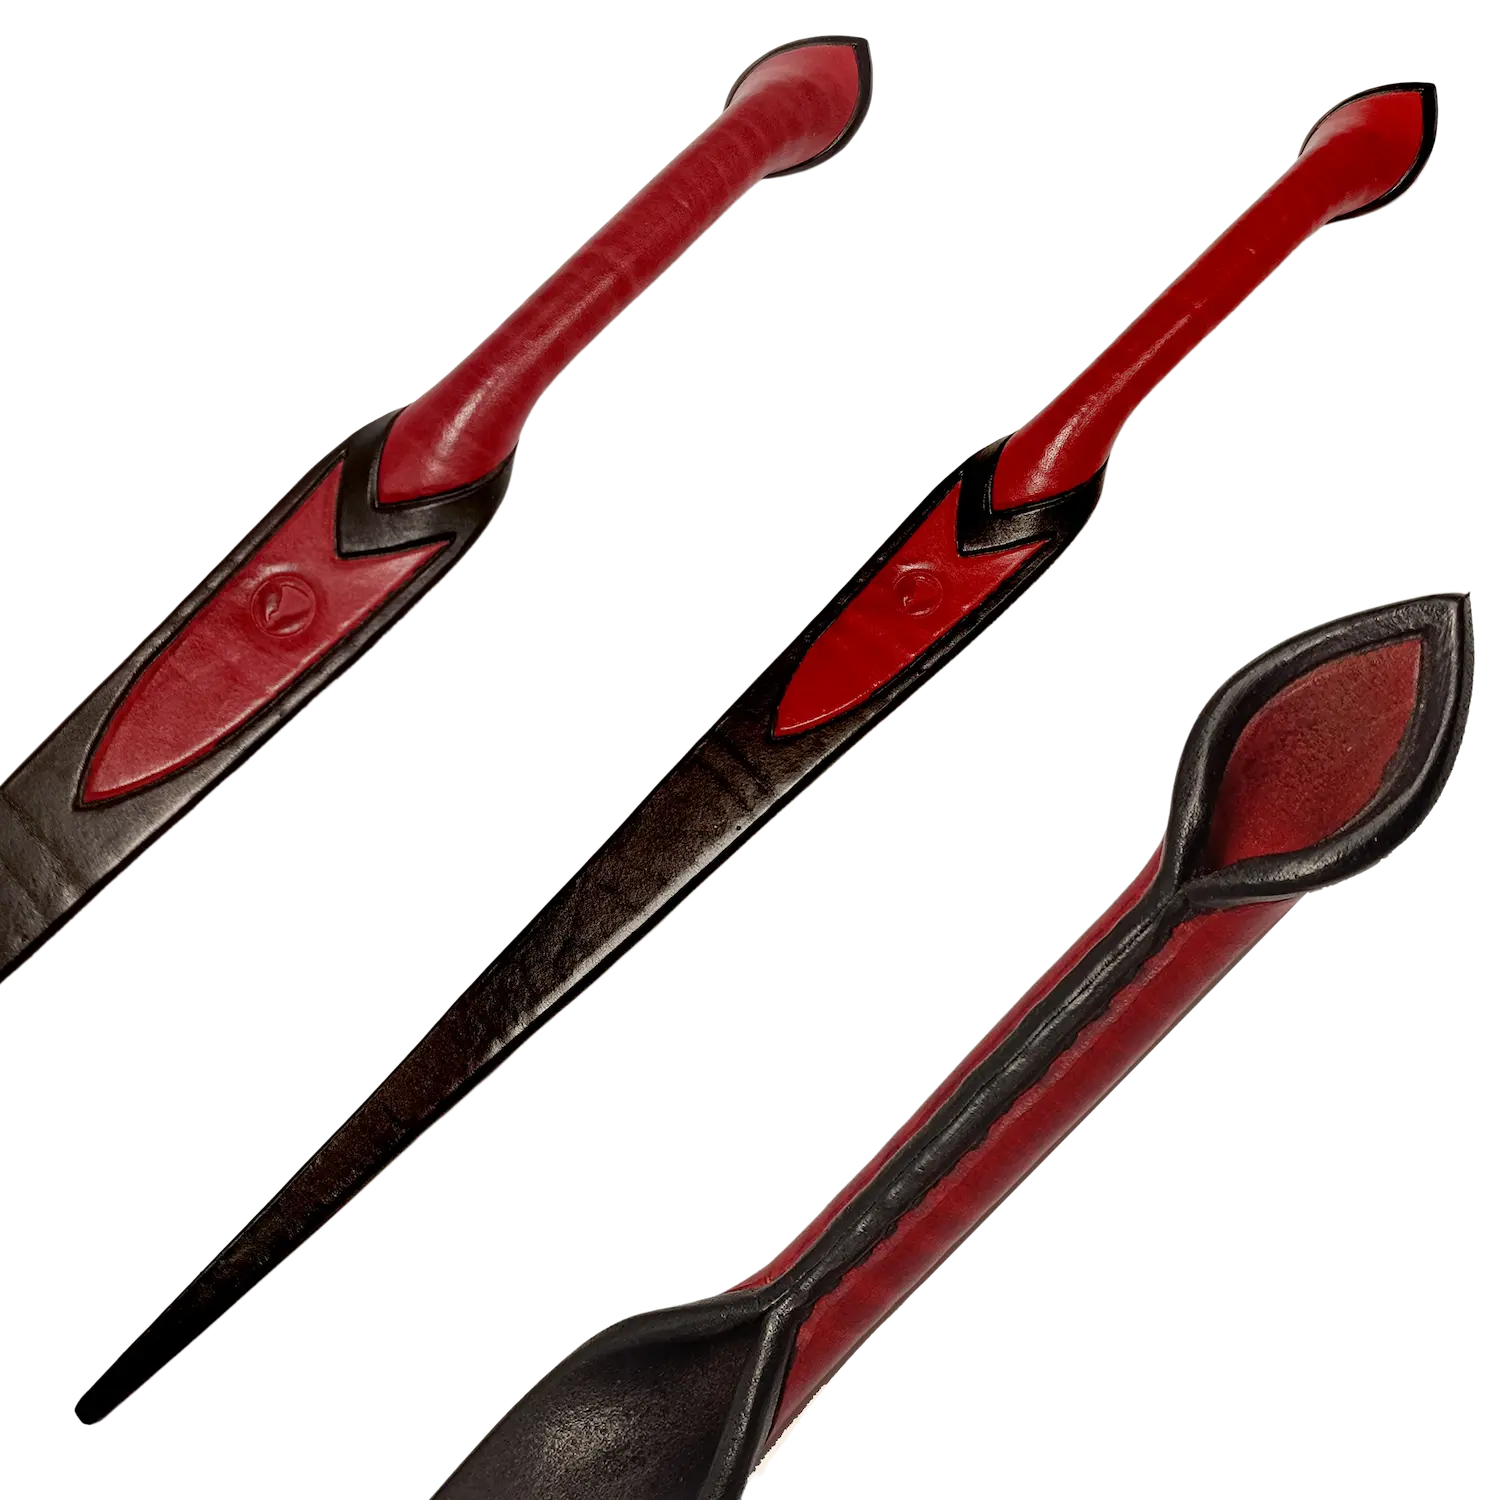 Plácačka ze silné barvené a leštěné kůže ve tvaru nože s červenou rukojetí. Cena 3000 Kč